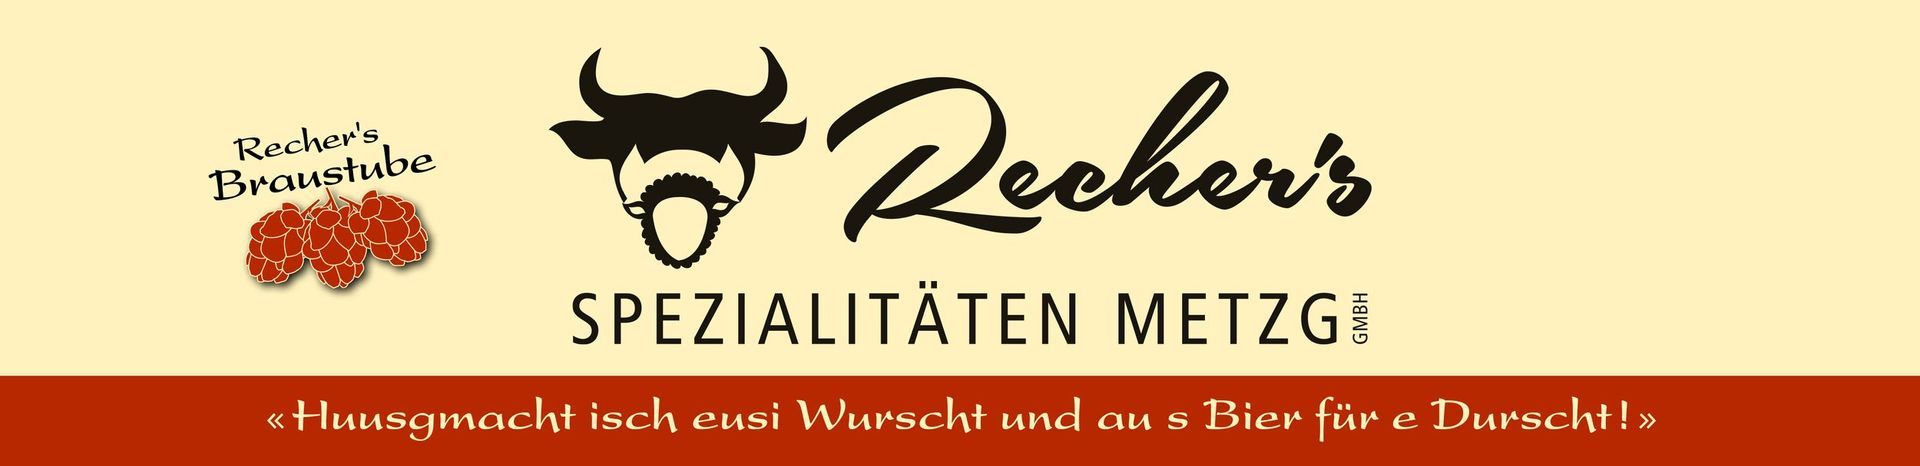 Banner - Recher's Spezialitäten Metzg GmbH